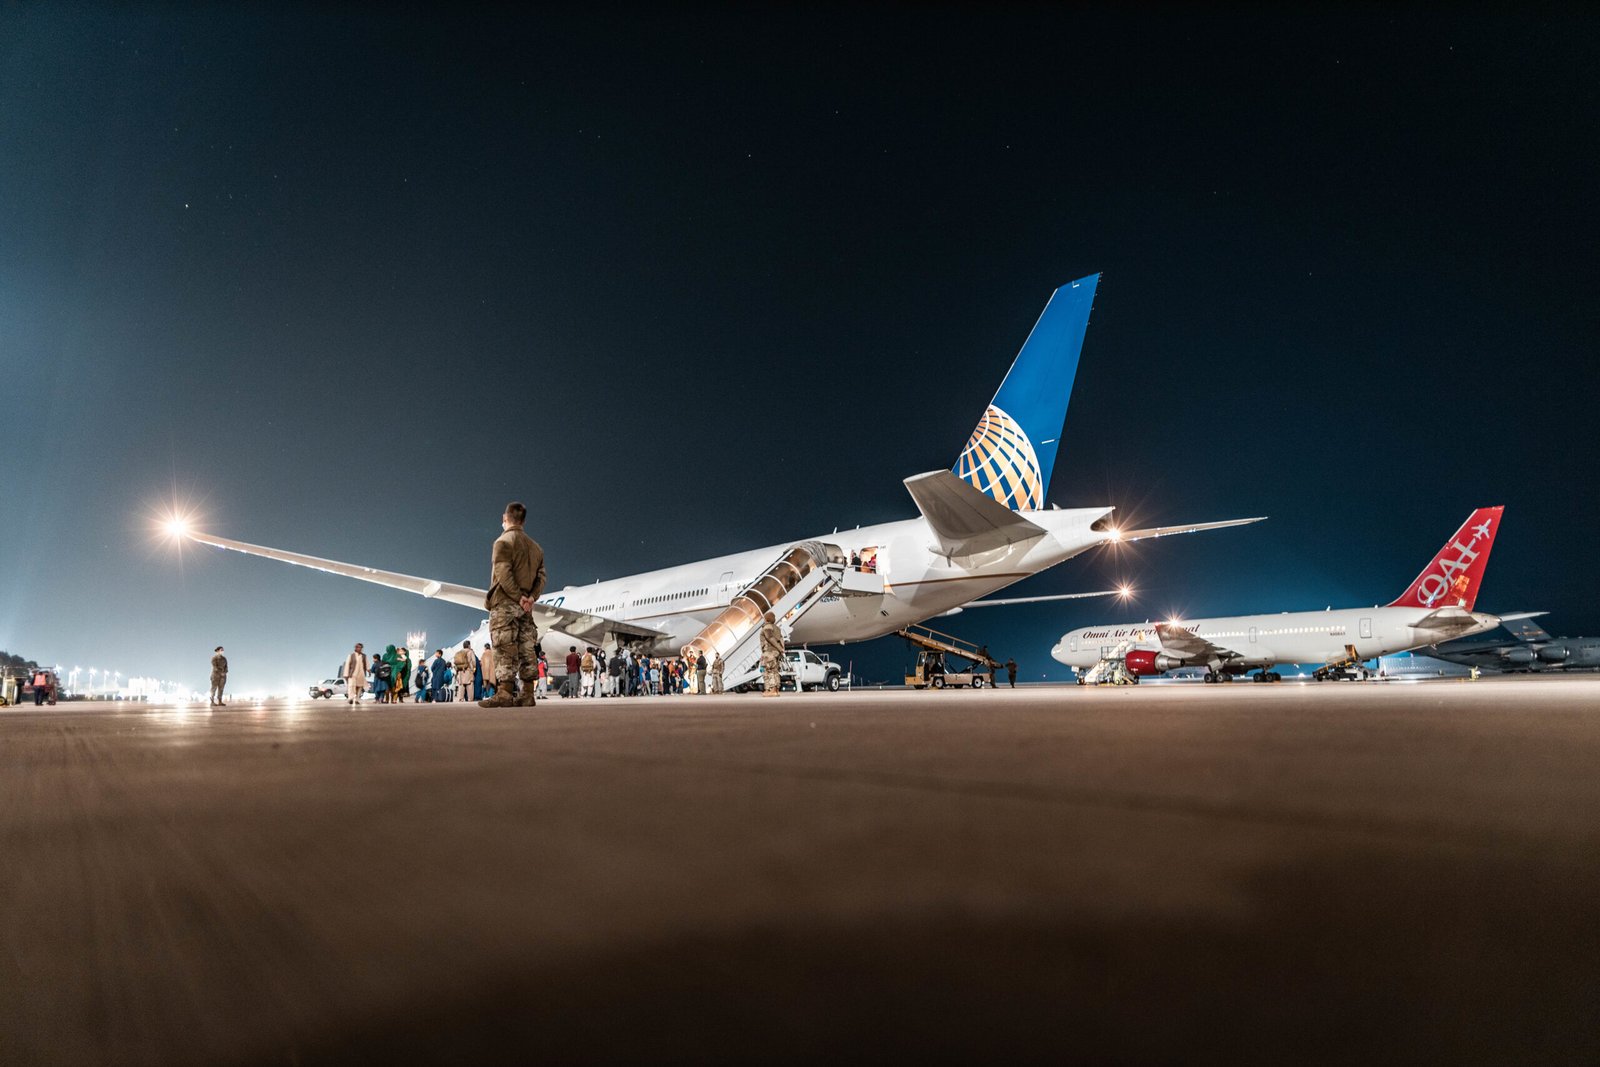 La big three norteamericanas (Delta Air Lines, United Airlines y American Airlines) forman parte del CRAF. Foto: Aaron Luetzen - USAF